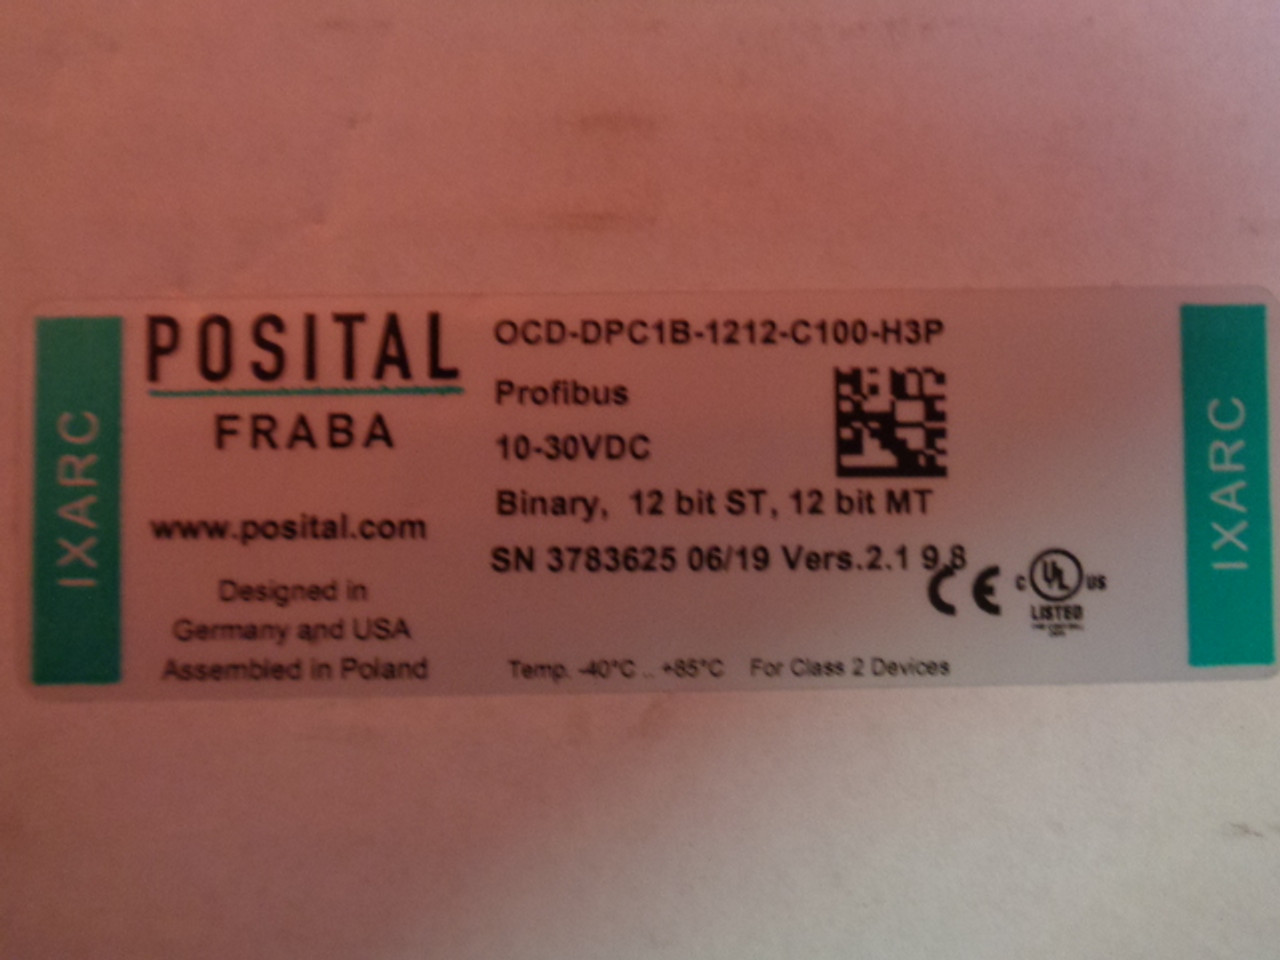 Posital Fraba OCD-DPC1B-1212-C100-H3P Profibus, 10-30VDC